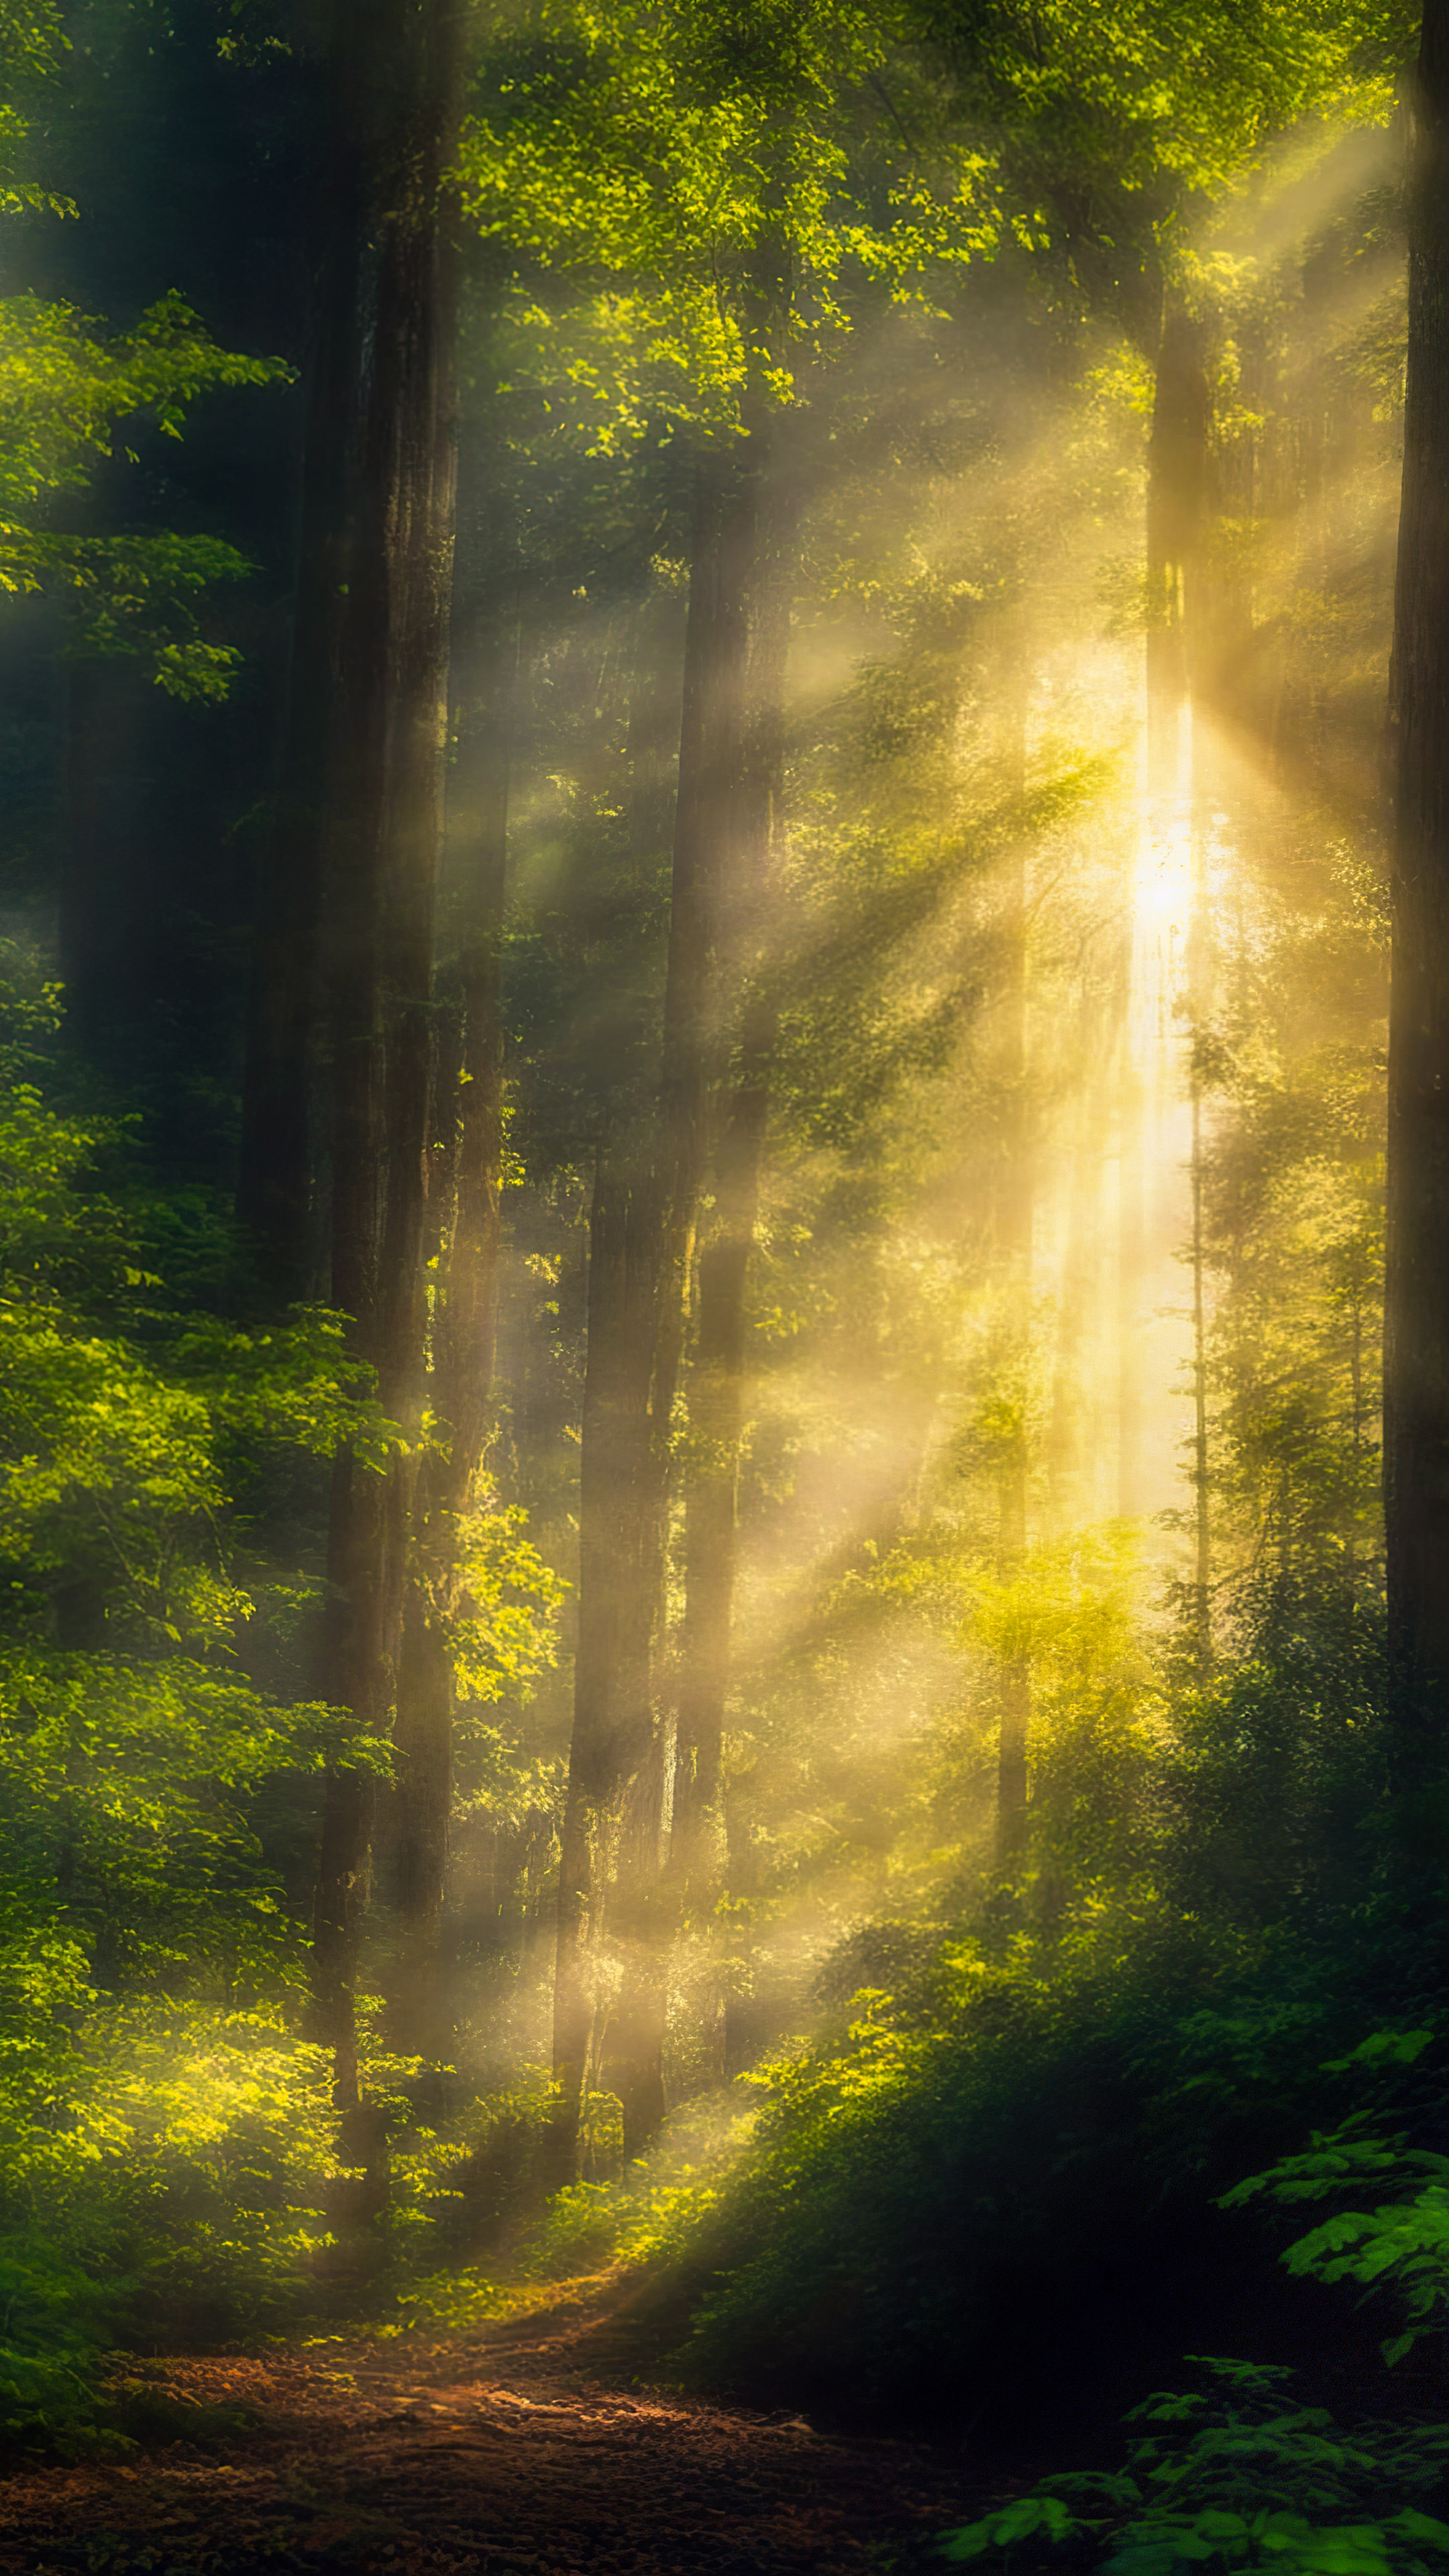 Téléchargez ce fond d'écran de paysage avec de belles images, présentant une scène sereine de forêt avec la lumière du soleil filtrant à travers la canopée dense, projetant des ombres mouchetées sur le sol de la forêt.